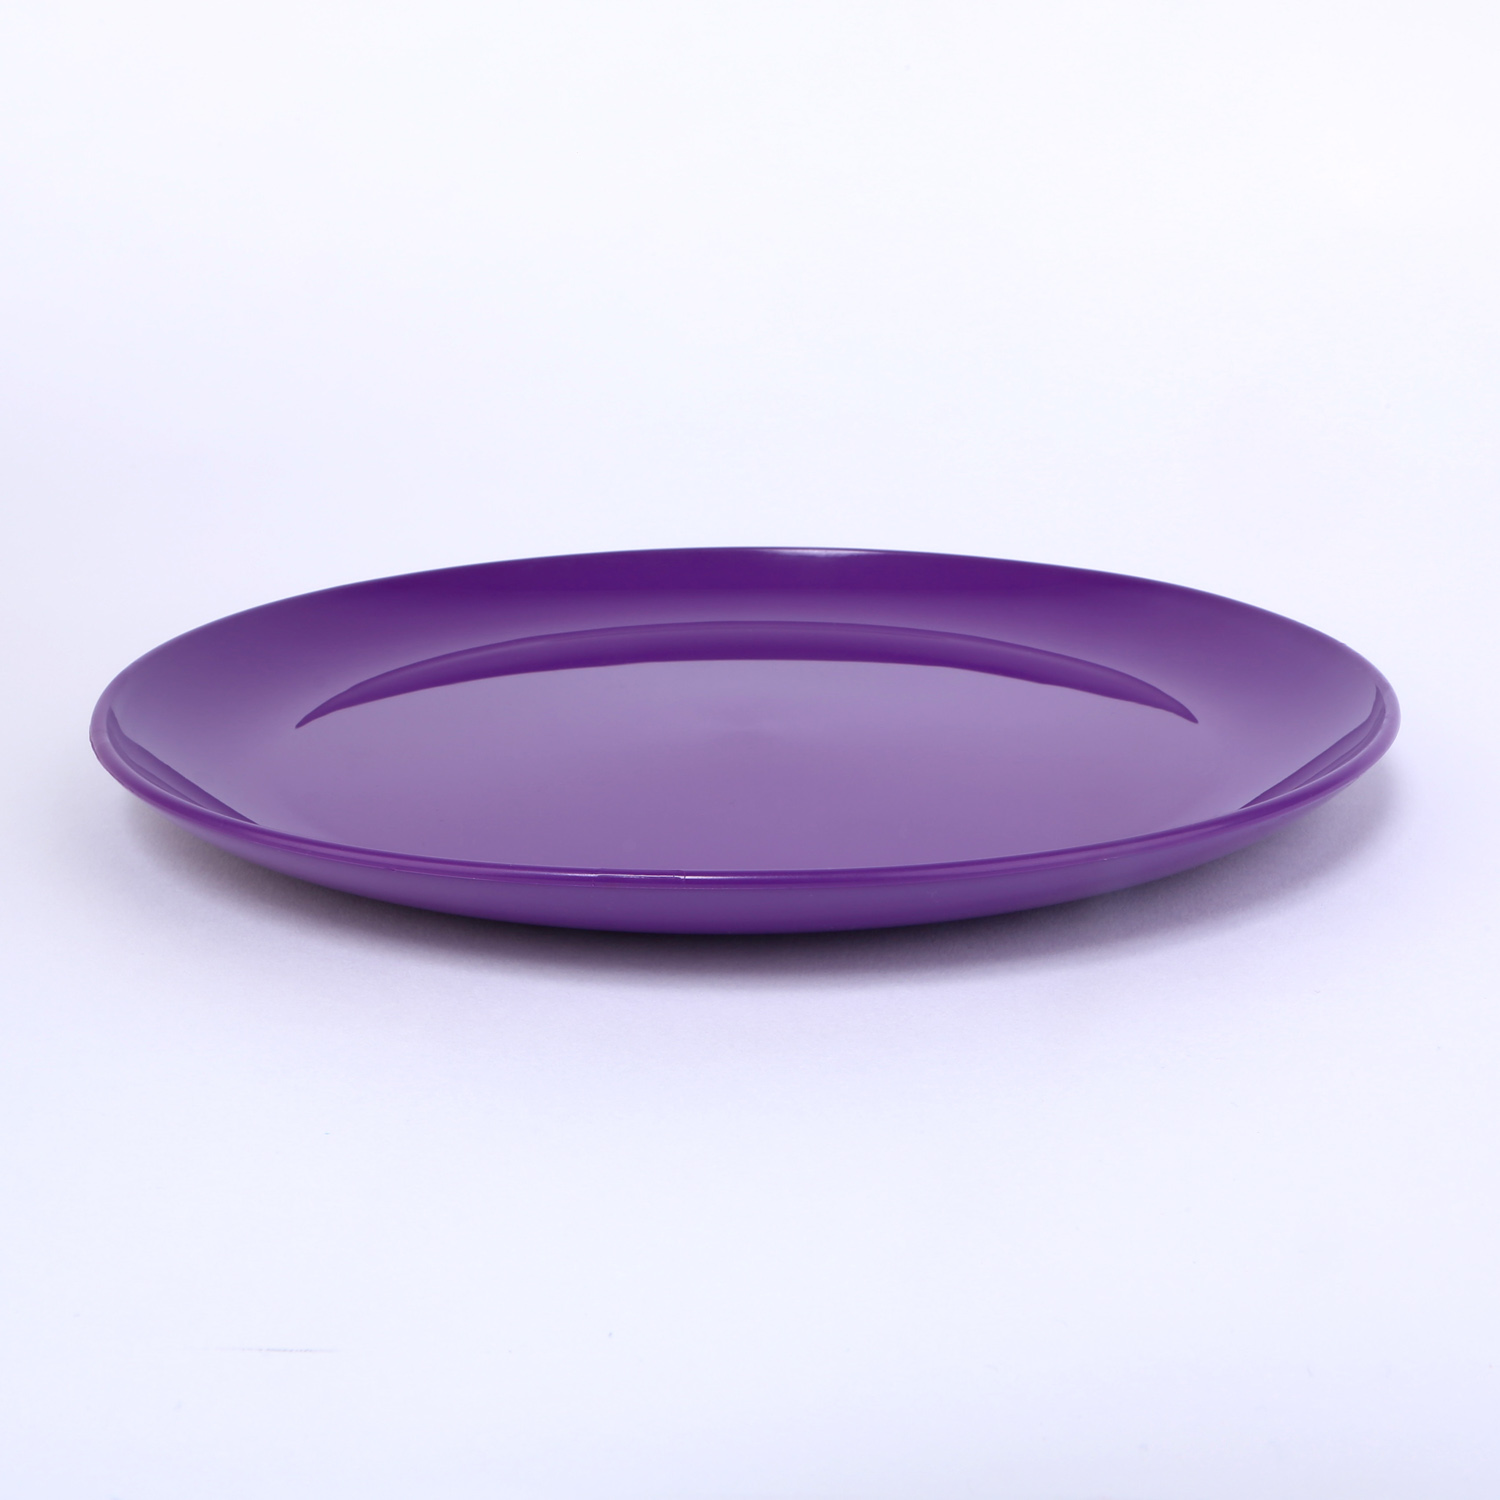 vaLon Zephyr Speiseteller 24 cm aus schadstofffreiemKunststoff in der Farbe lila.